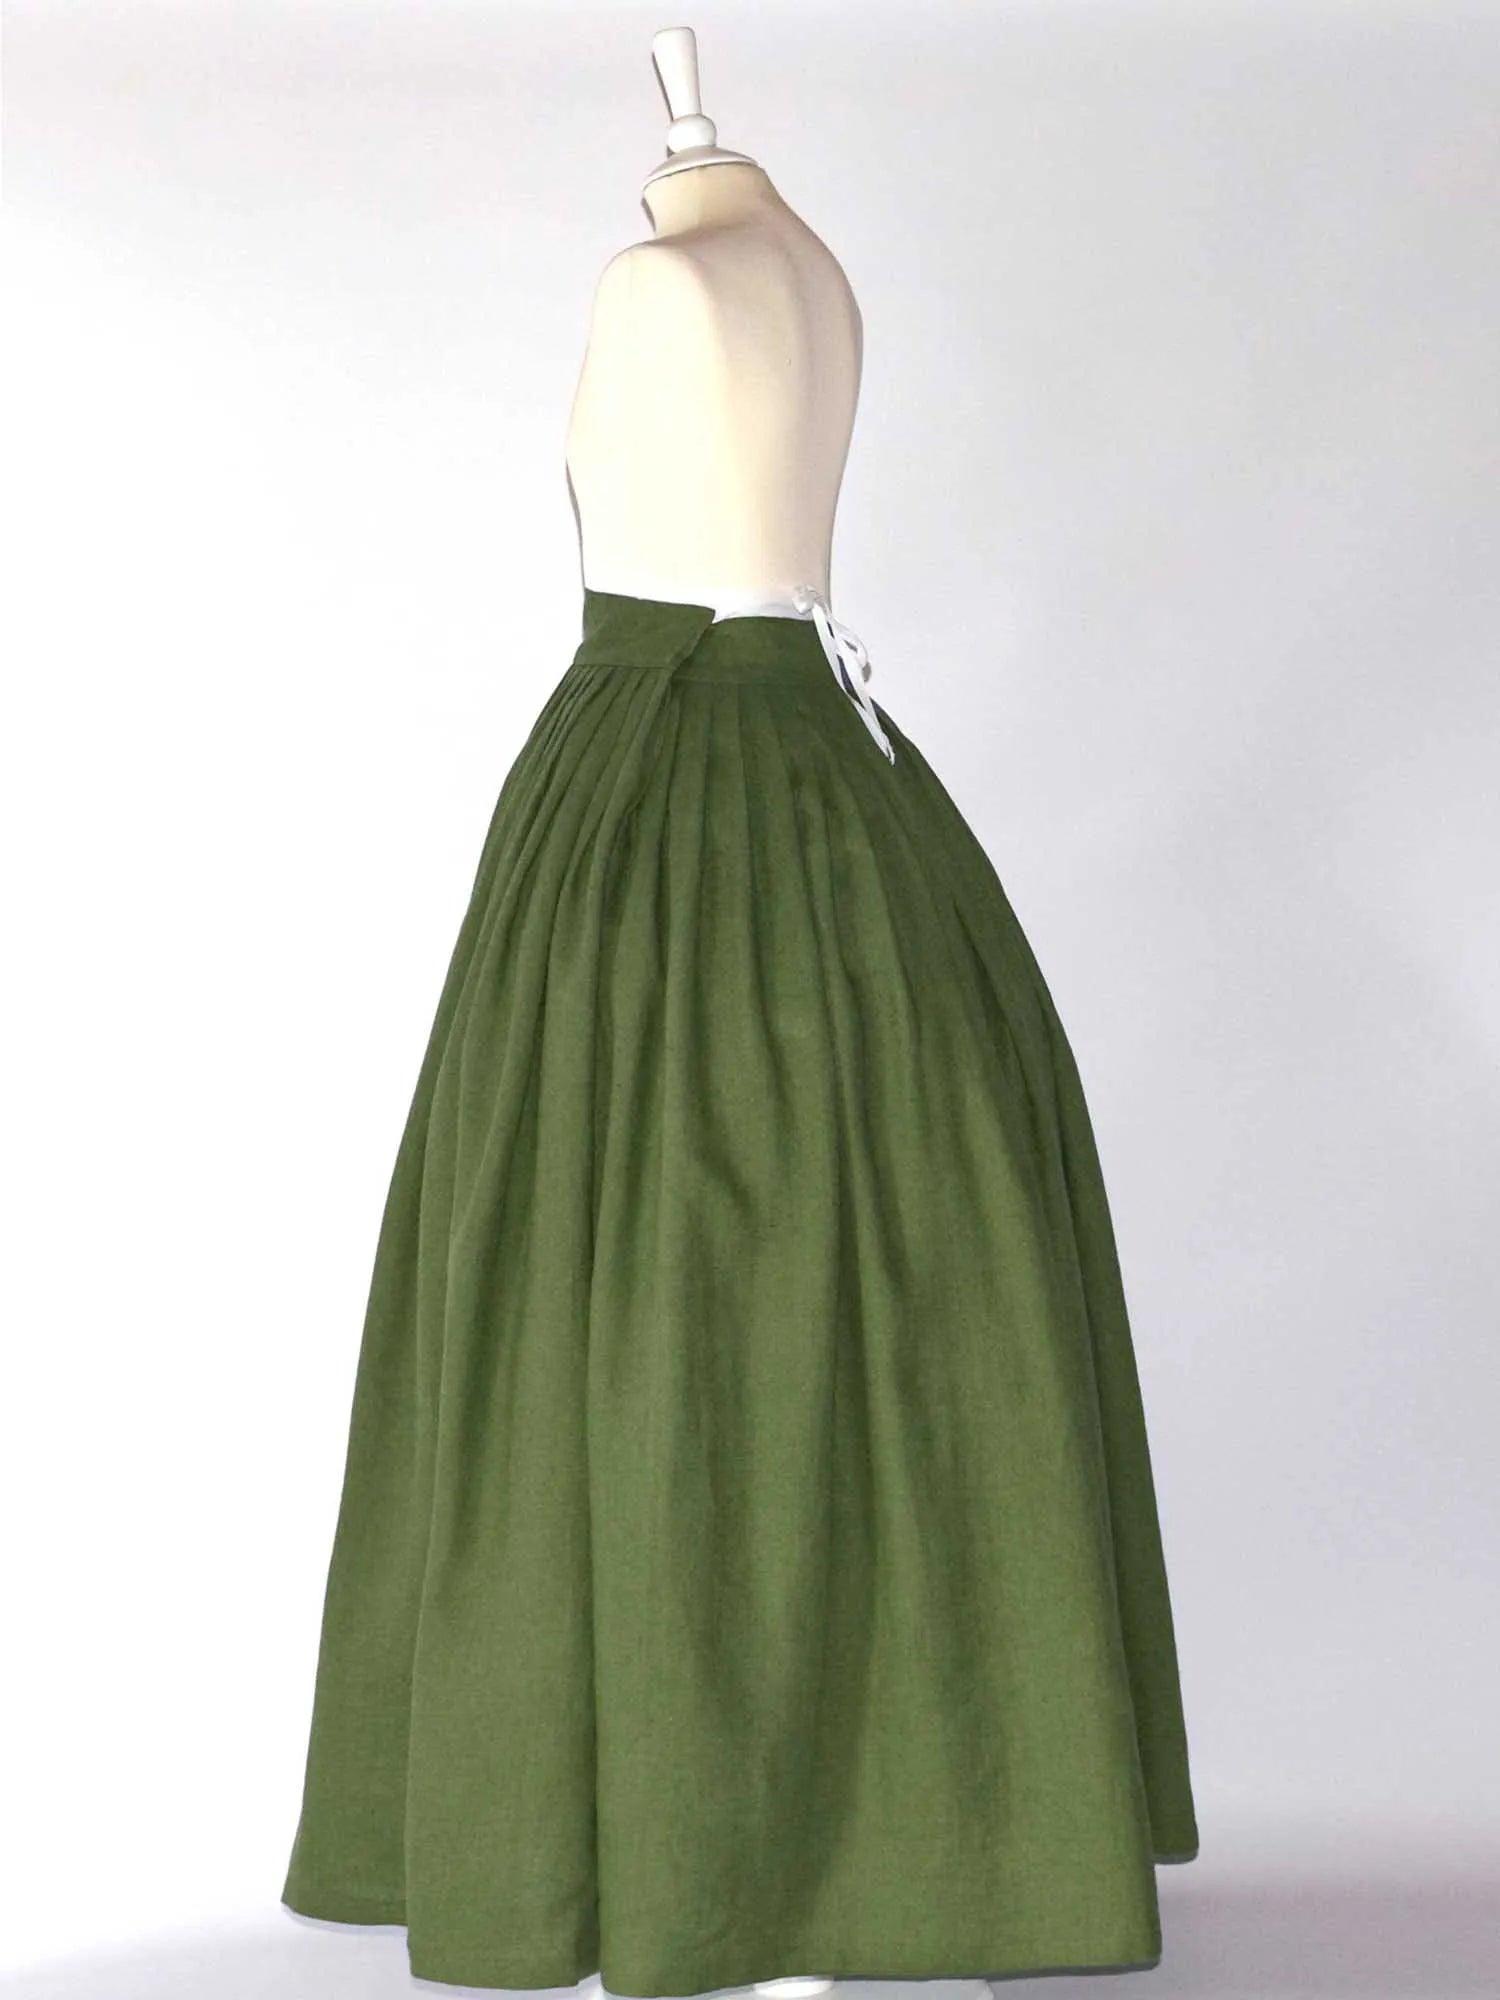 HELOISE, Historical Skirt in Moss Green Linen - Atelier Serraspina